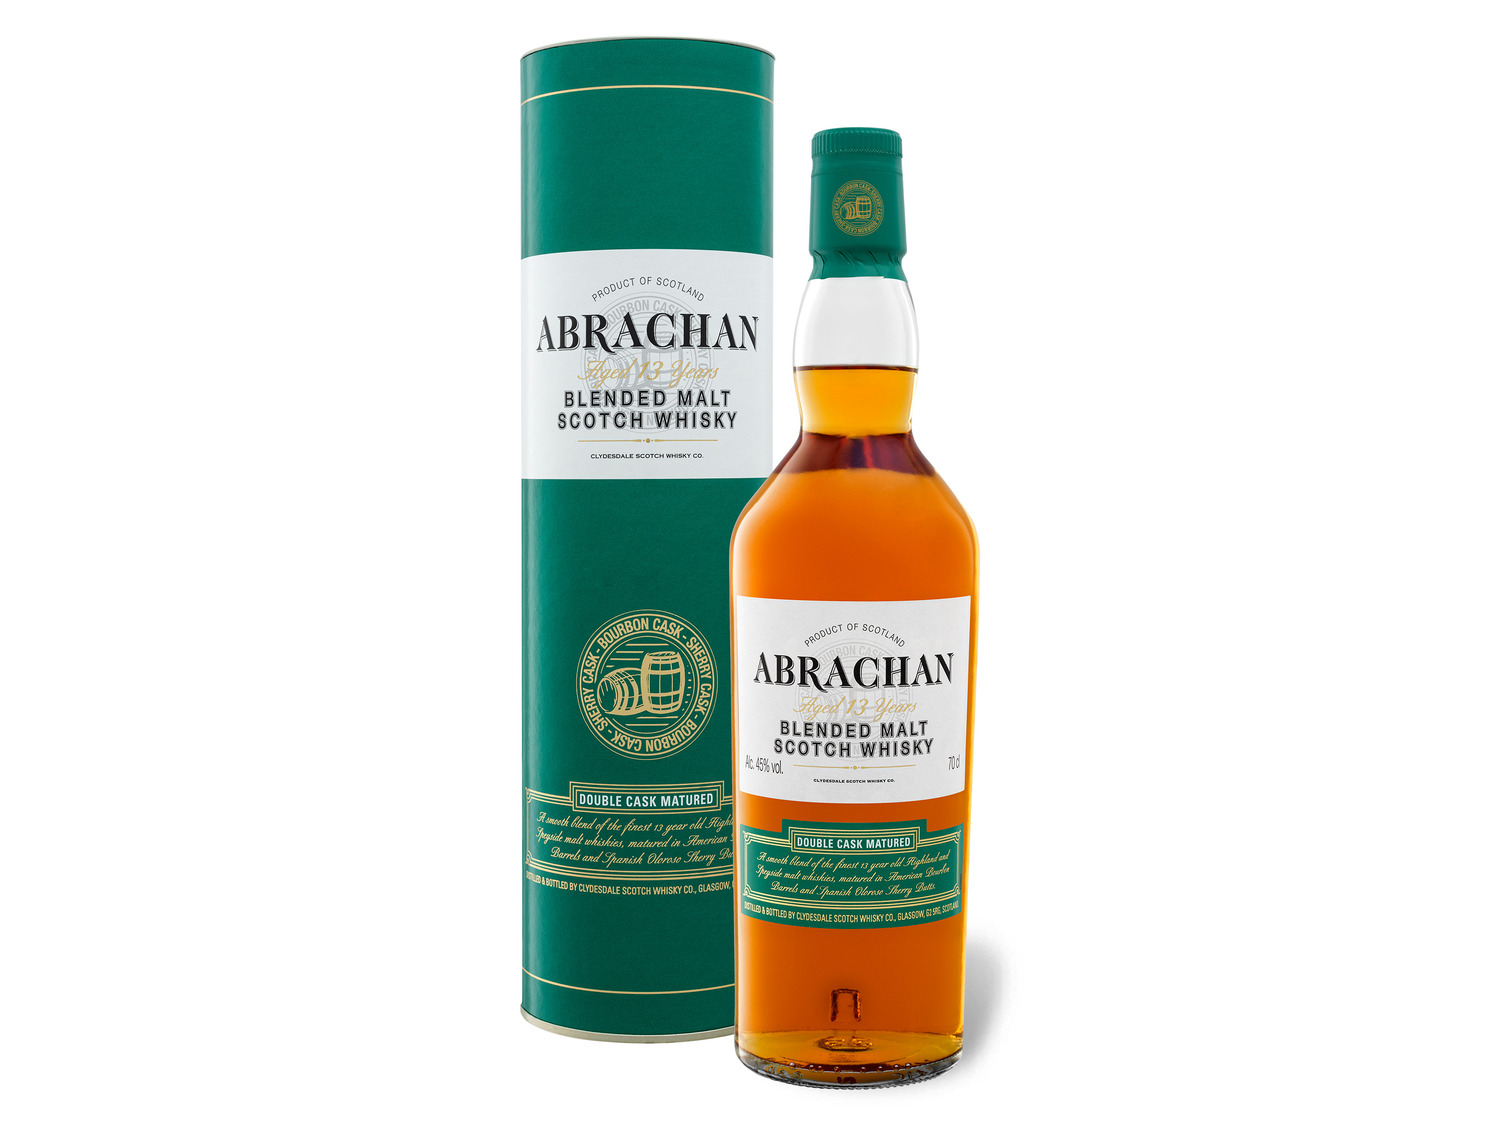 Abrachan Double Cask Matured Blended Malt Whisk… Scotch